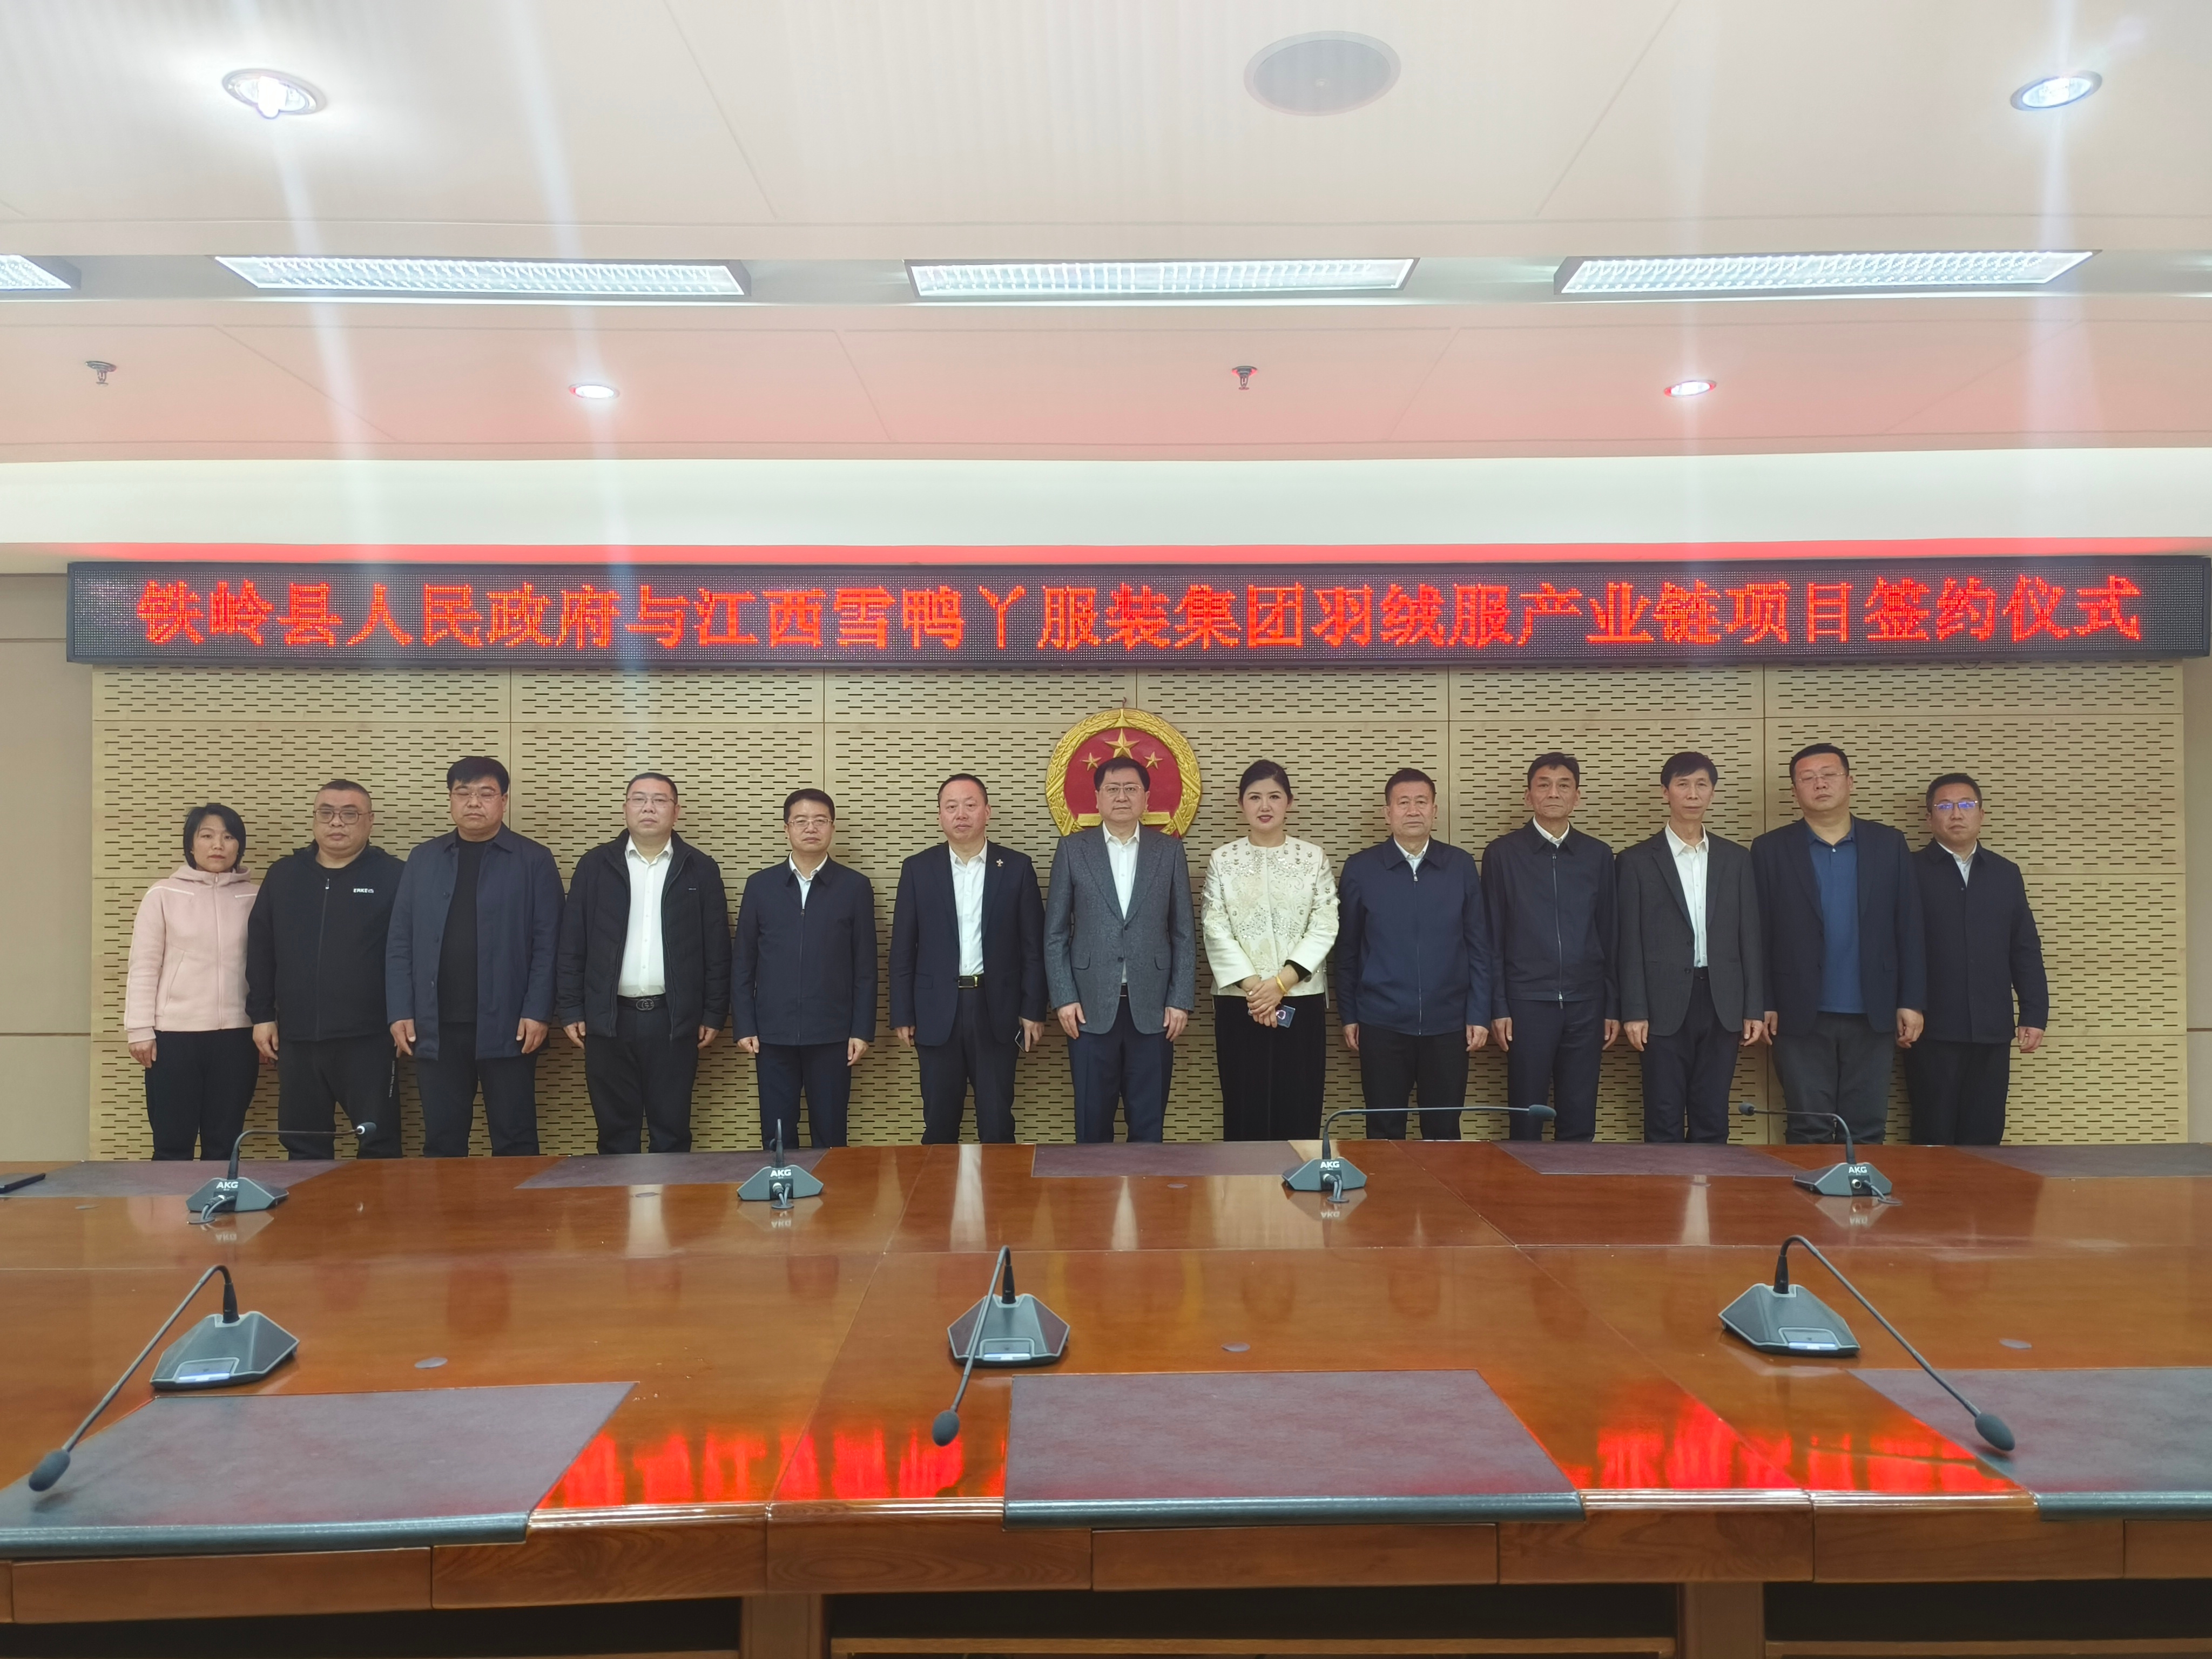 铁岭县人民政府与江西雪鸭丫服装集团羽绒服产业链项目签约